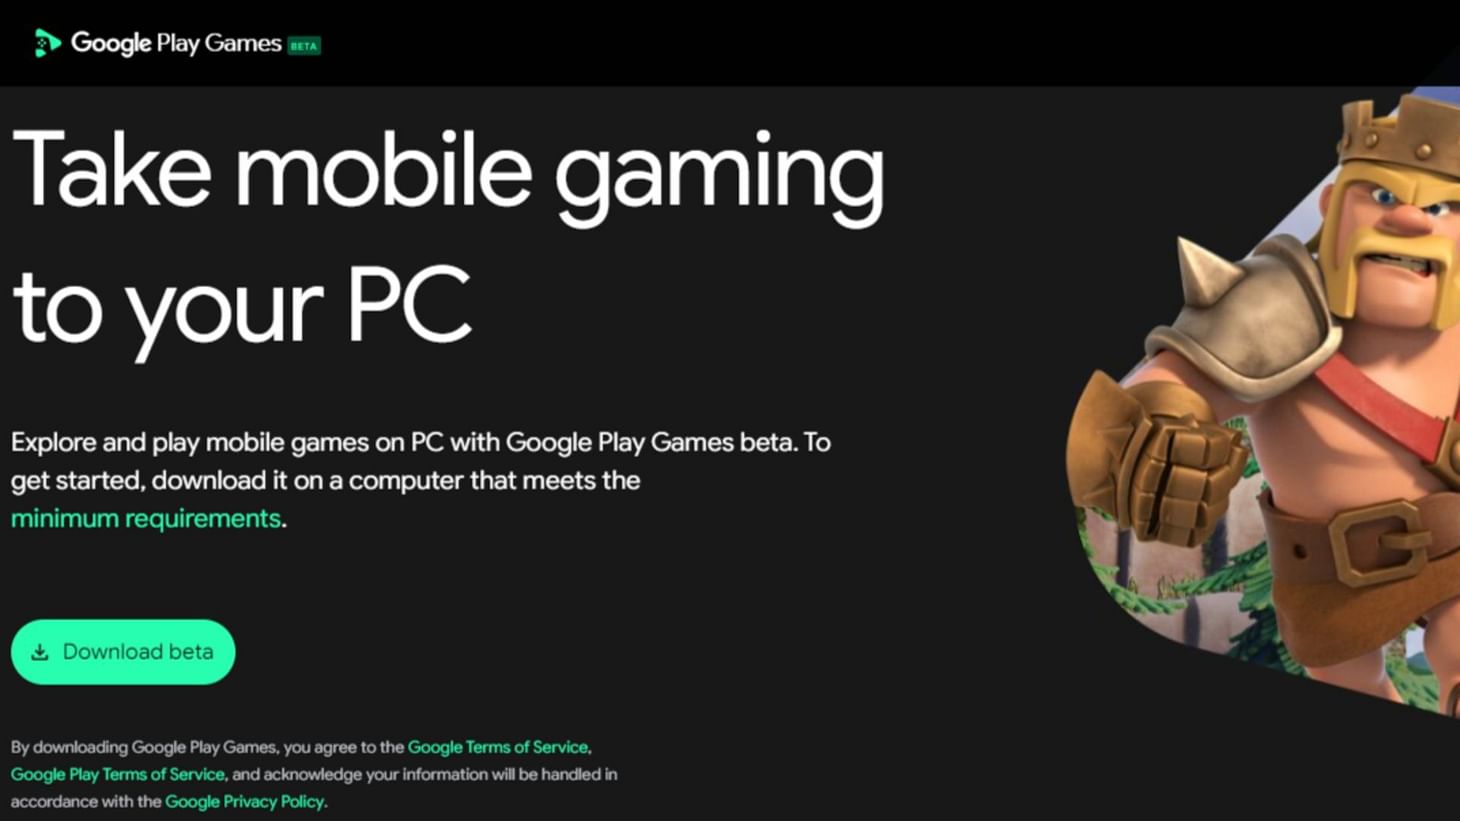 Google Play Games beta website (Image via Google)